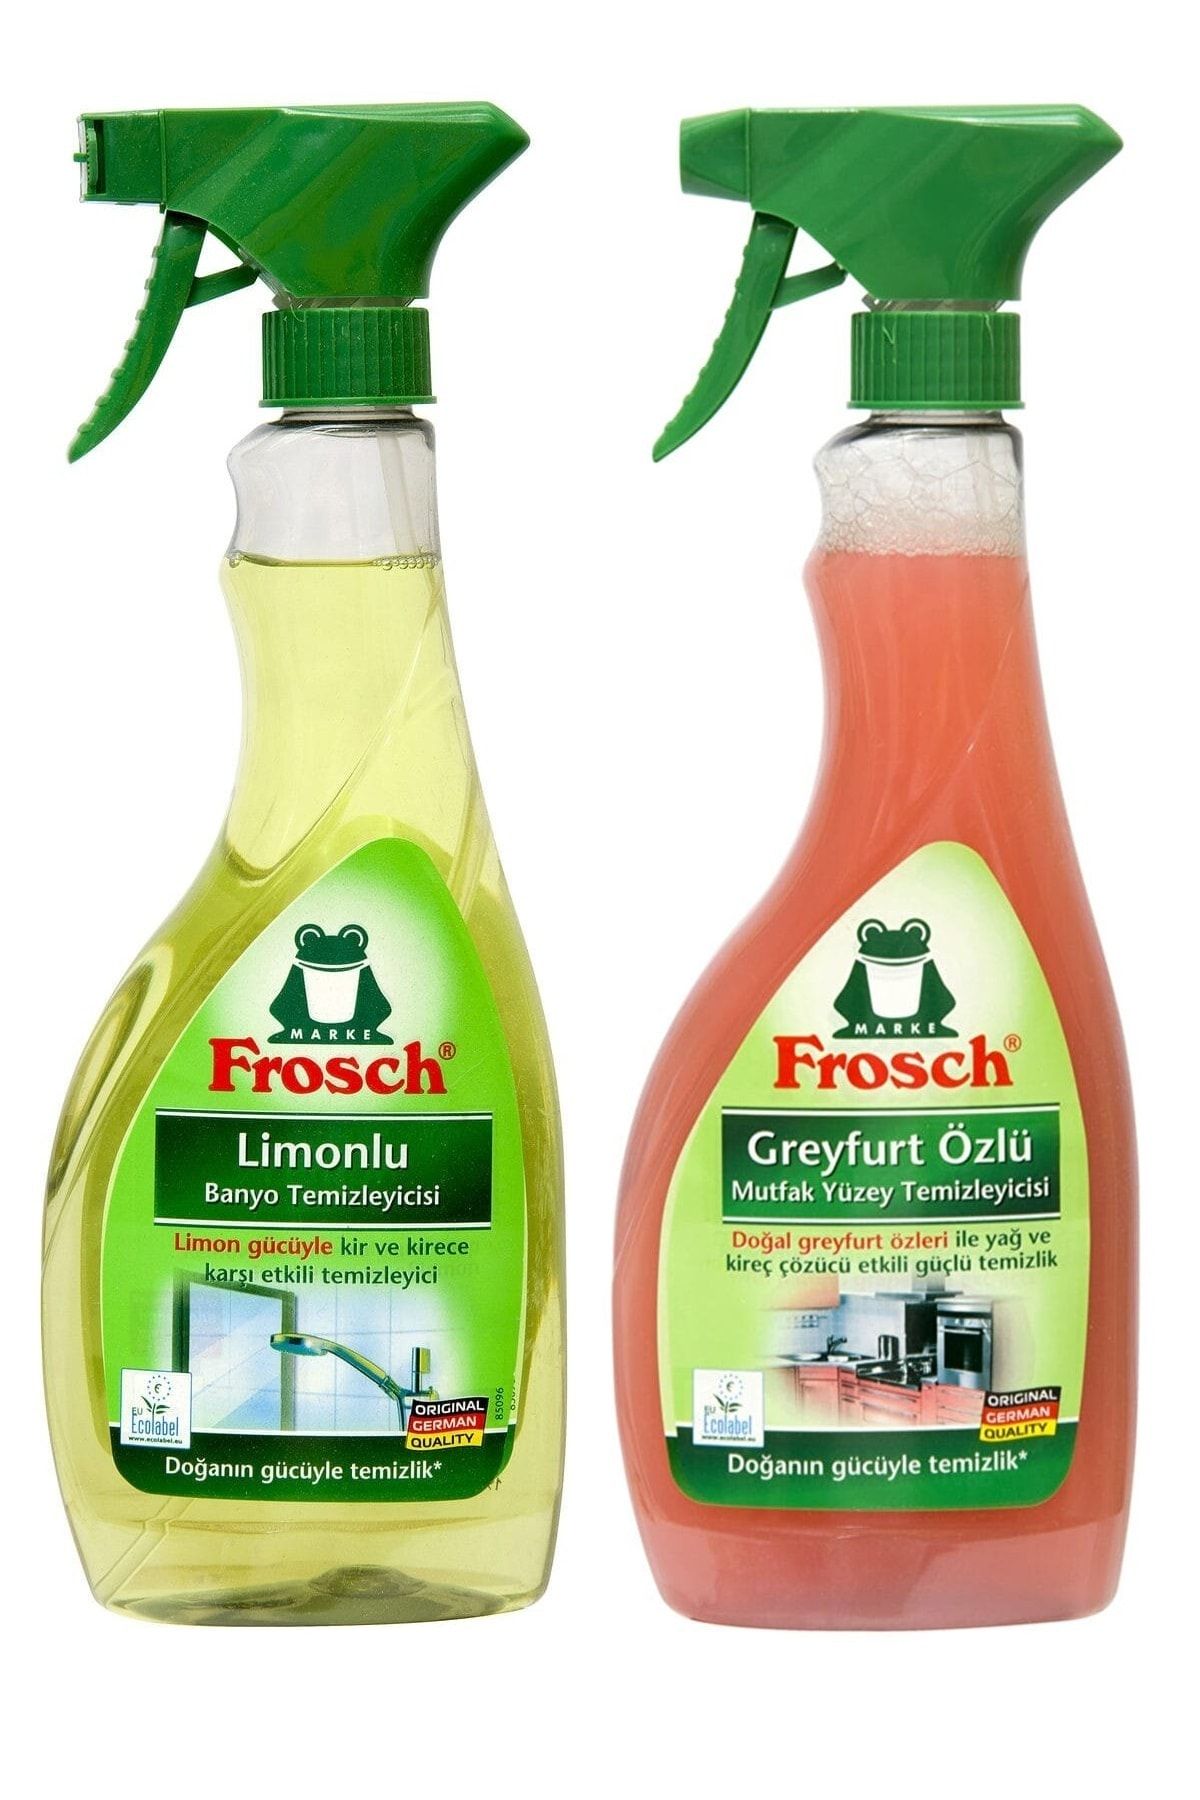 Frosch Greyfurt Özlü Mutfak Yüzey Temizleyici 500 ml Ve Limonlu Banyo Temizleyici 500 ml